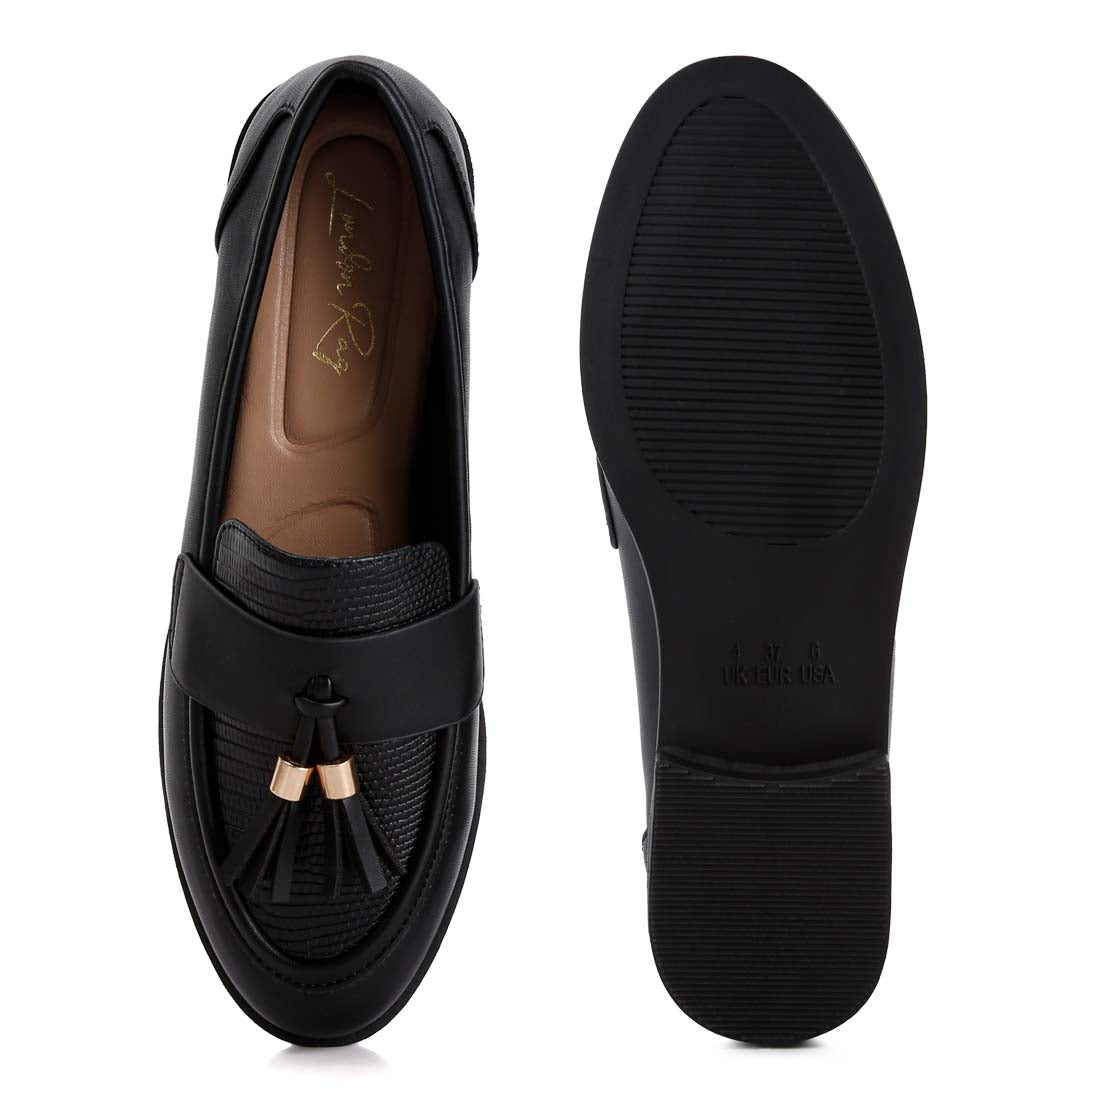 tassels detail loafers#color_black